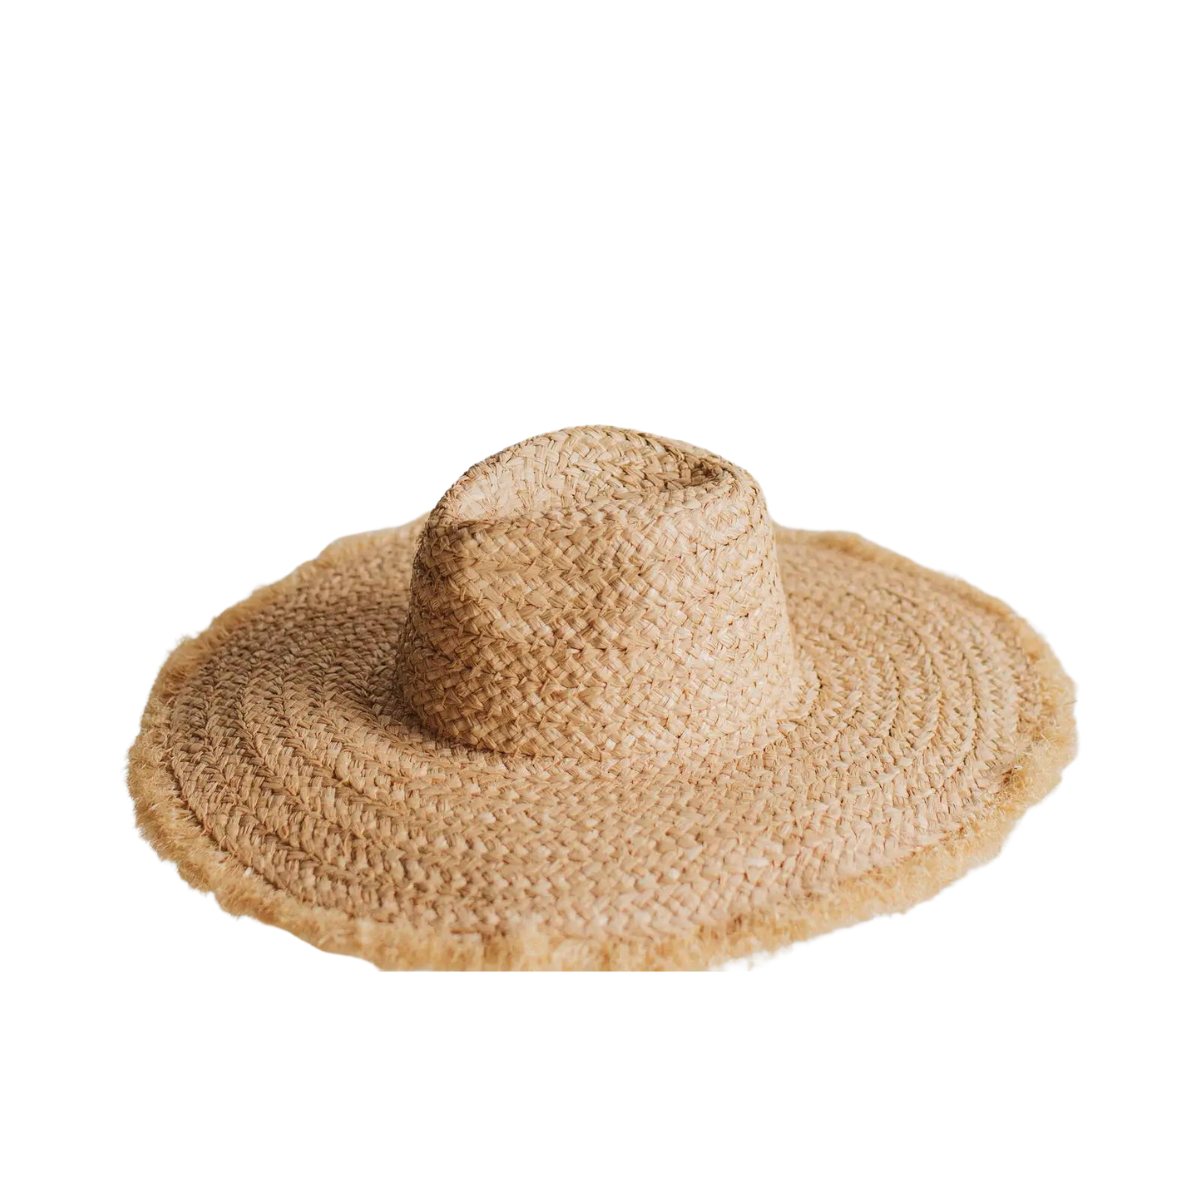 Clementine Straw Sun Hat